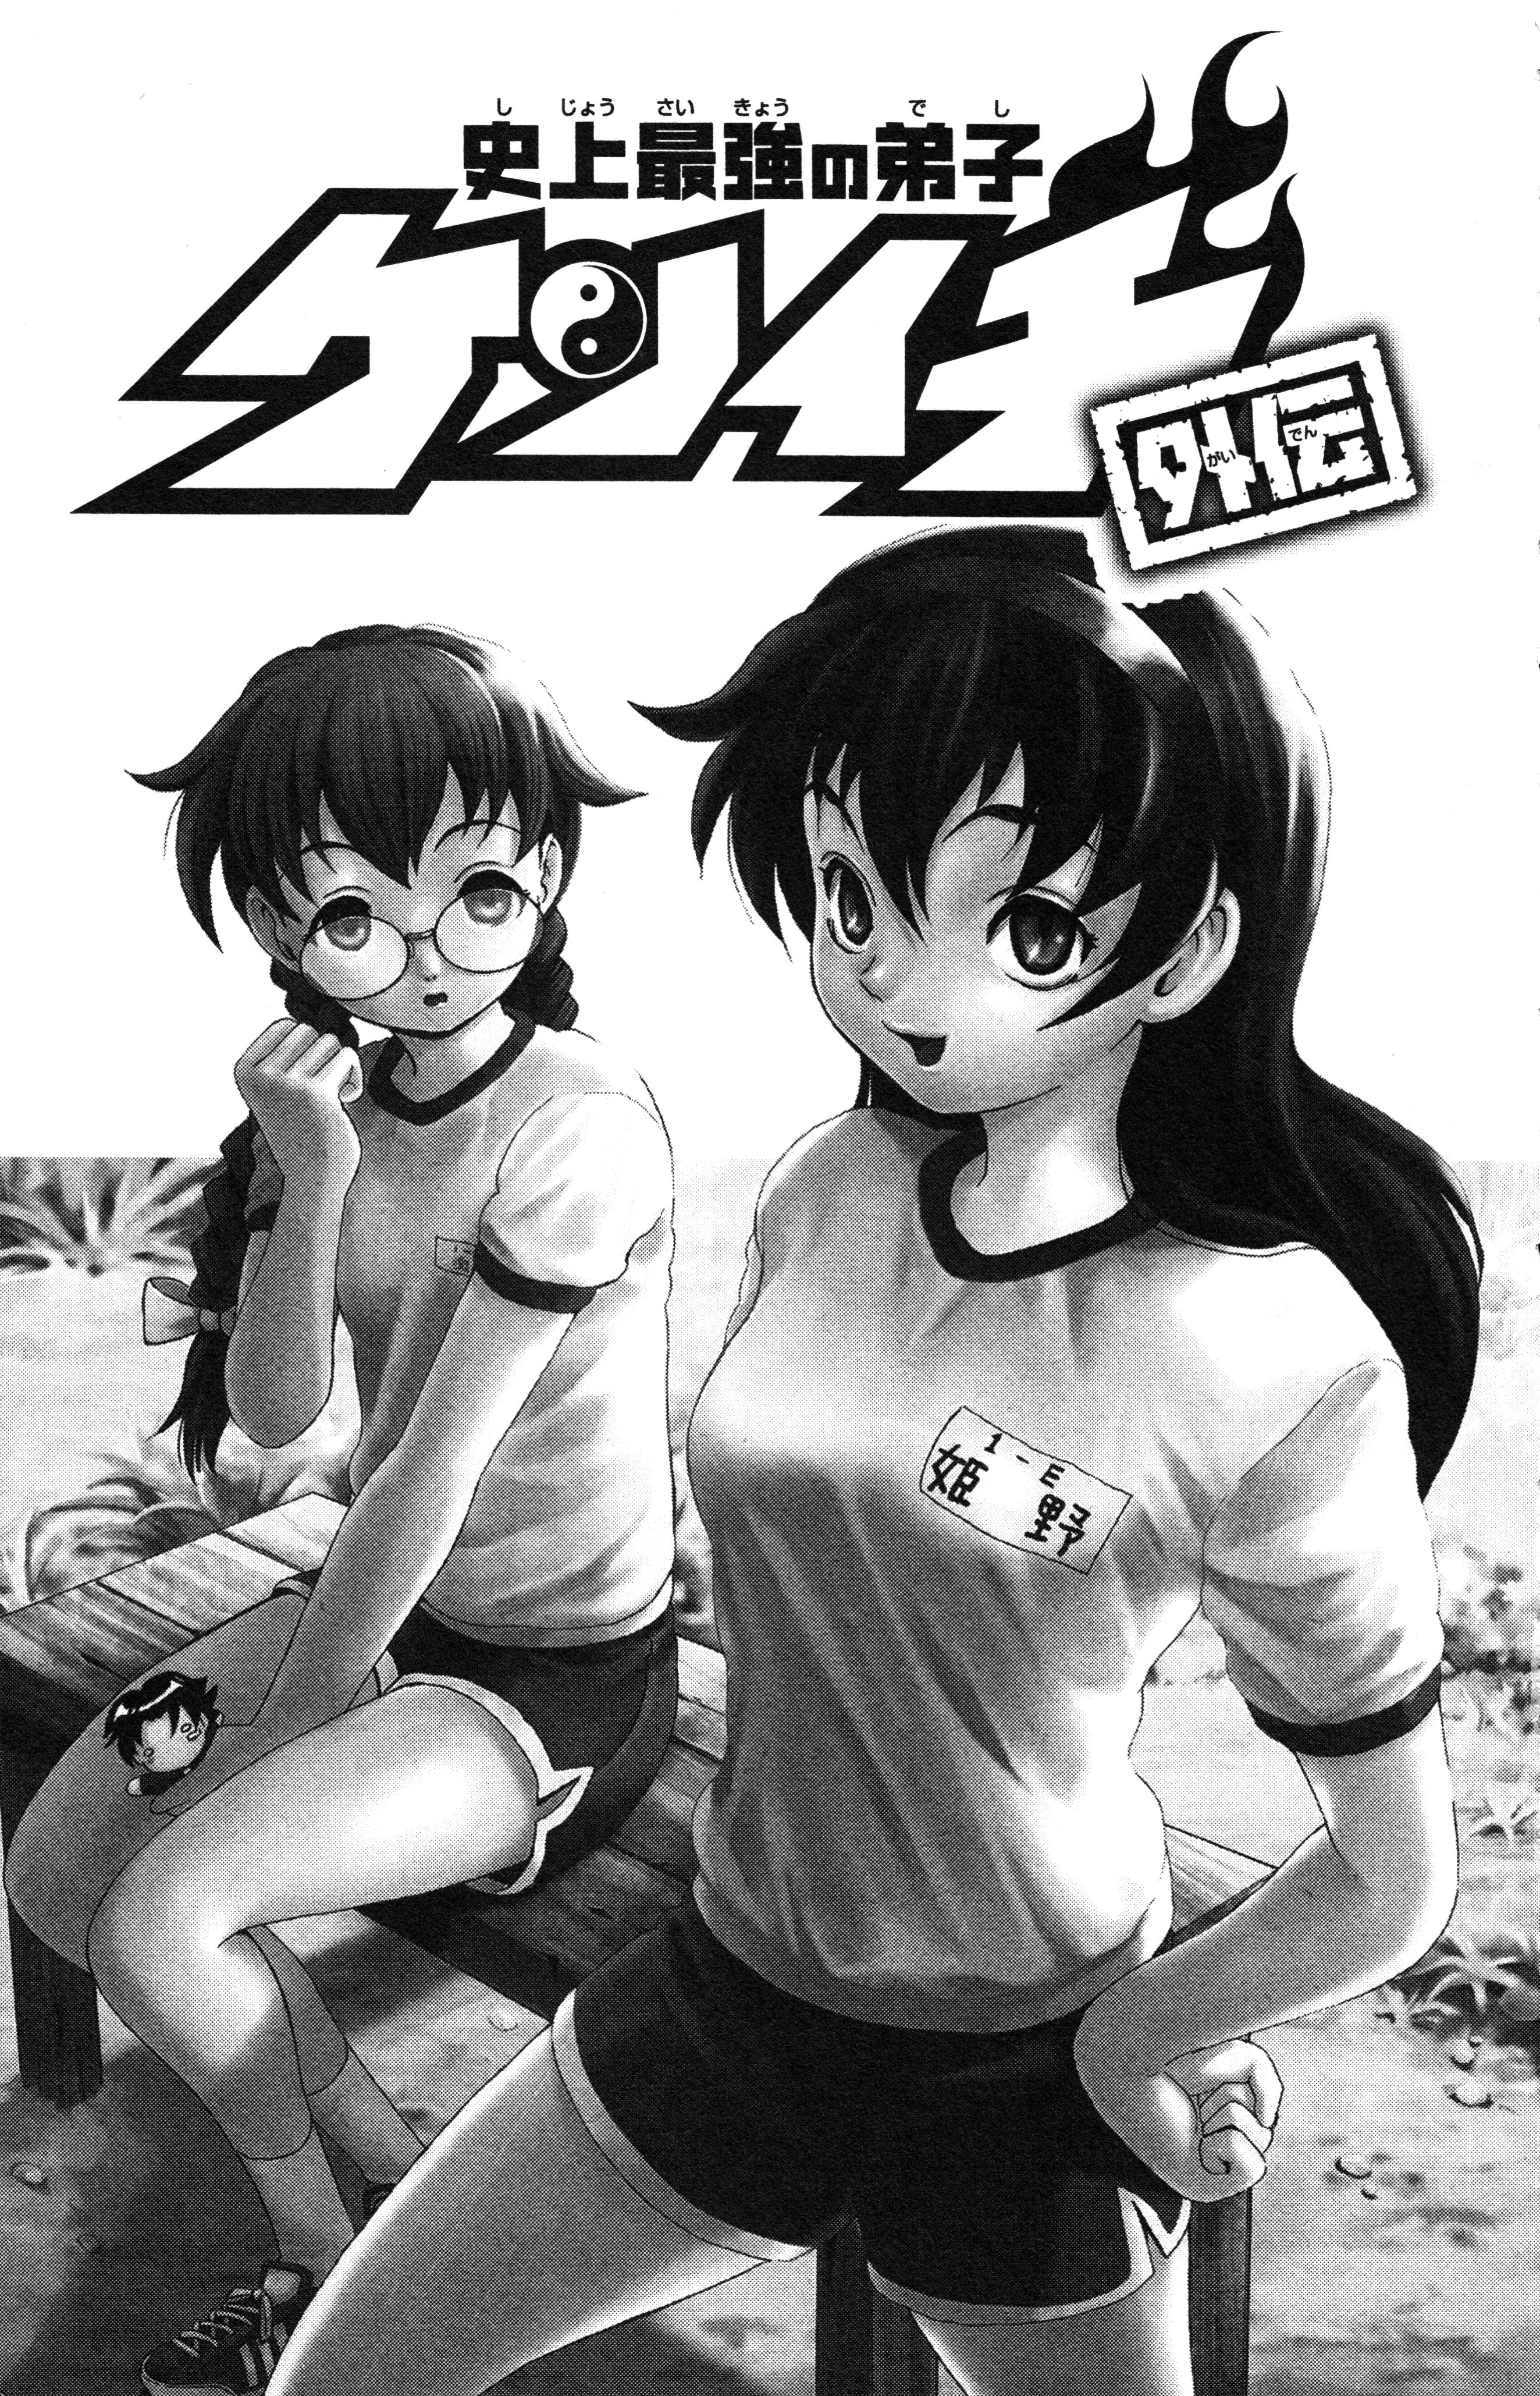 Shijō Saikyō no Deshi Kenichi (manga) - Anime News Network